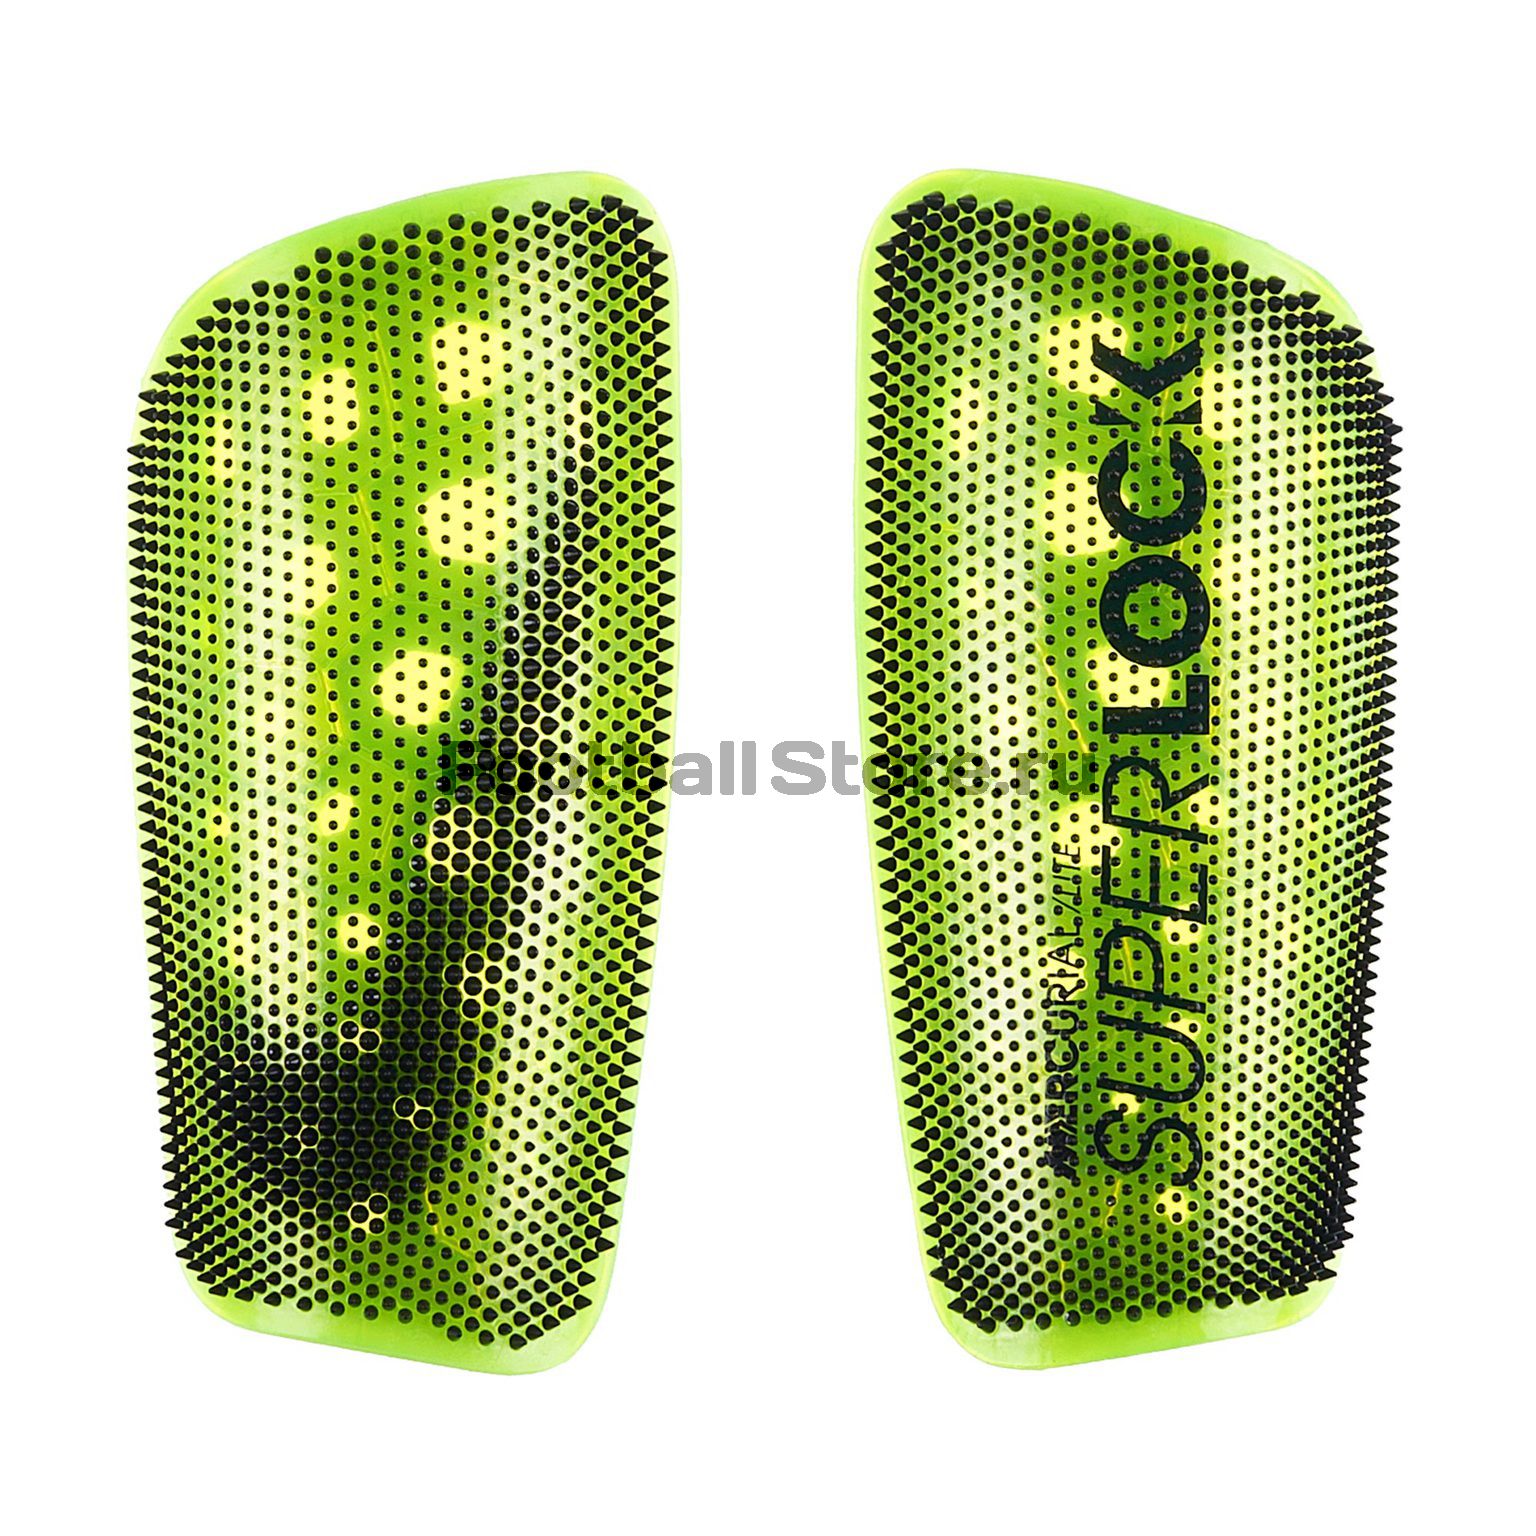 Щитки Nike Mercurial Lite SuperLock SP2163-702